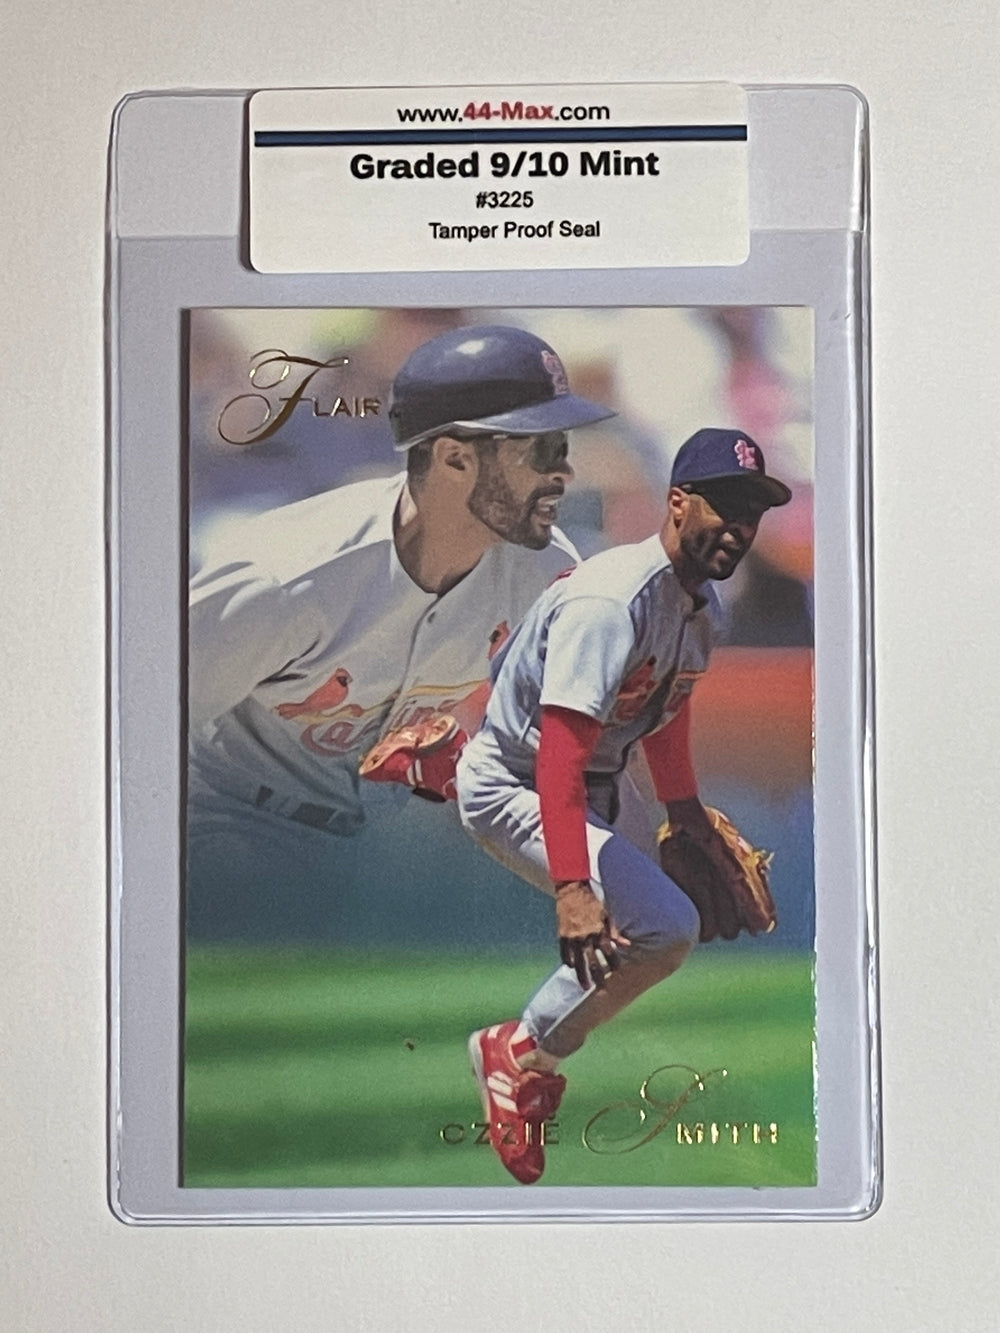 Ozzie Smith 1993 Flair Baseball Card. 44-Max 9/10 Mint #3225